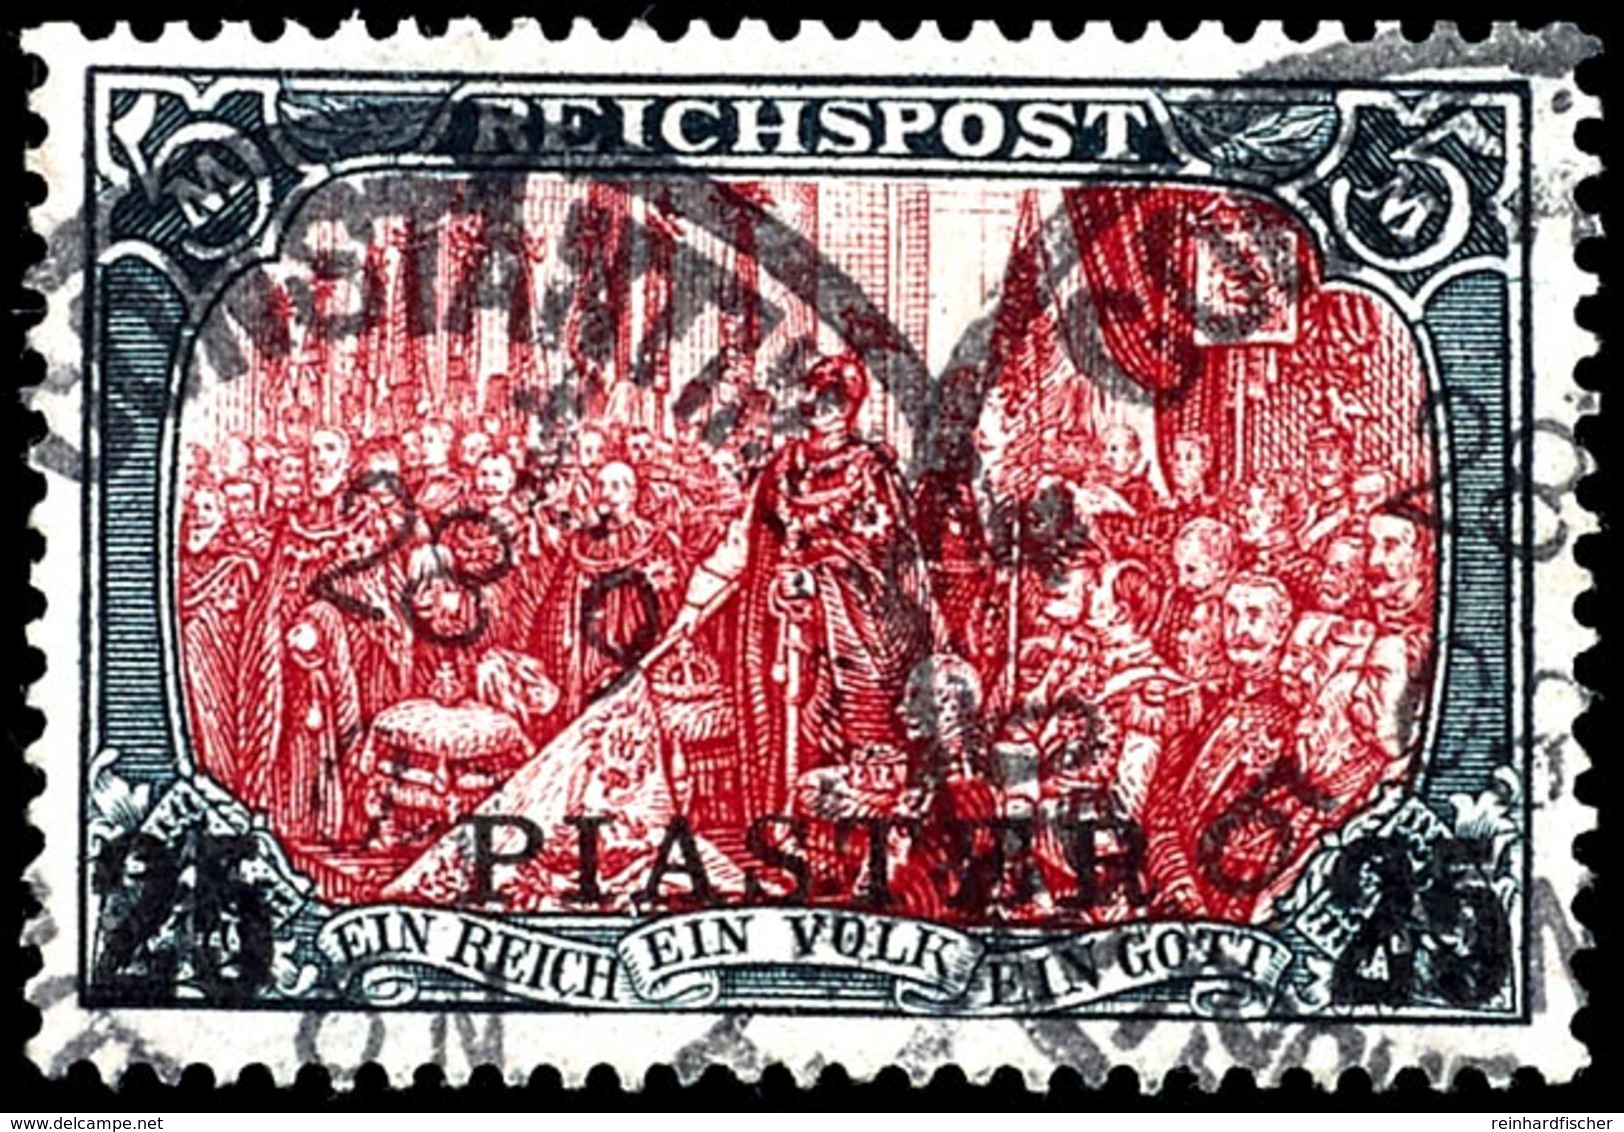 5 Mark Reichspost In Type II Mit Aufdruck "25 PIASTER", Tadellos, Gestempelt "CONSTANTINOPEL", Geprüft Bothe, Michel 550 - Deutsche Post In Der Türkei